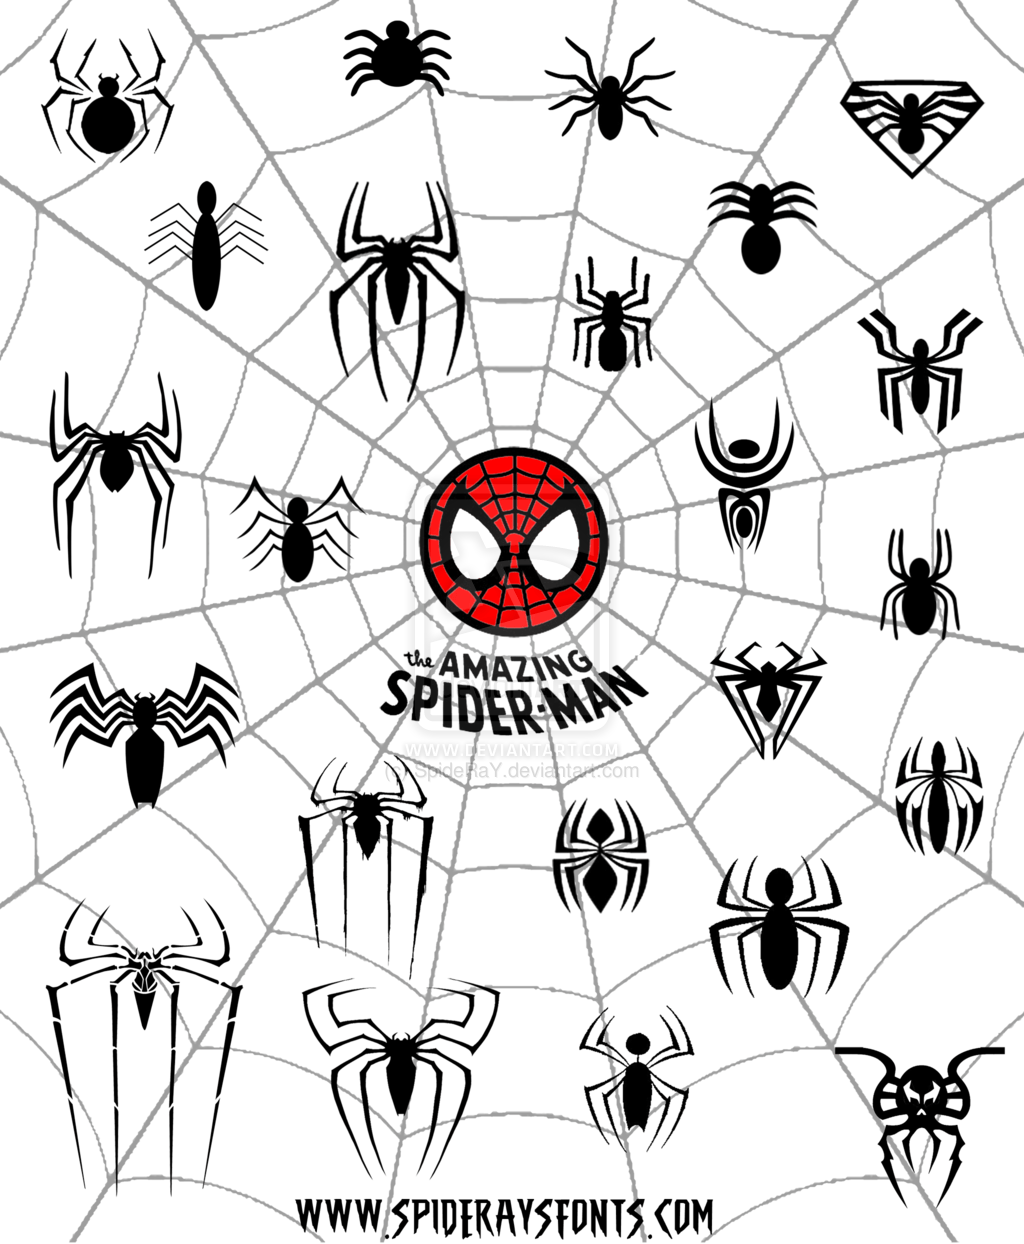 Spider-Man Spider Logo - The Amazing Spider Man Logo Web